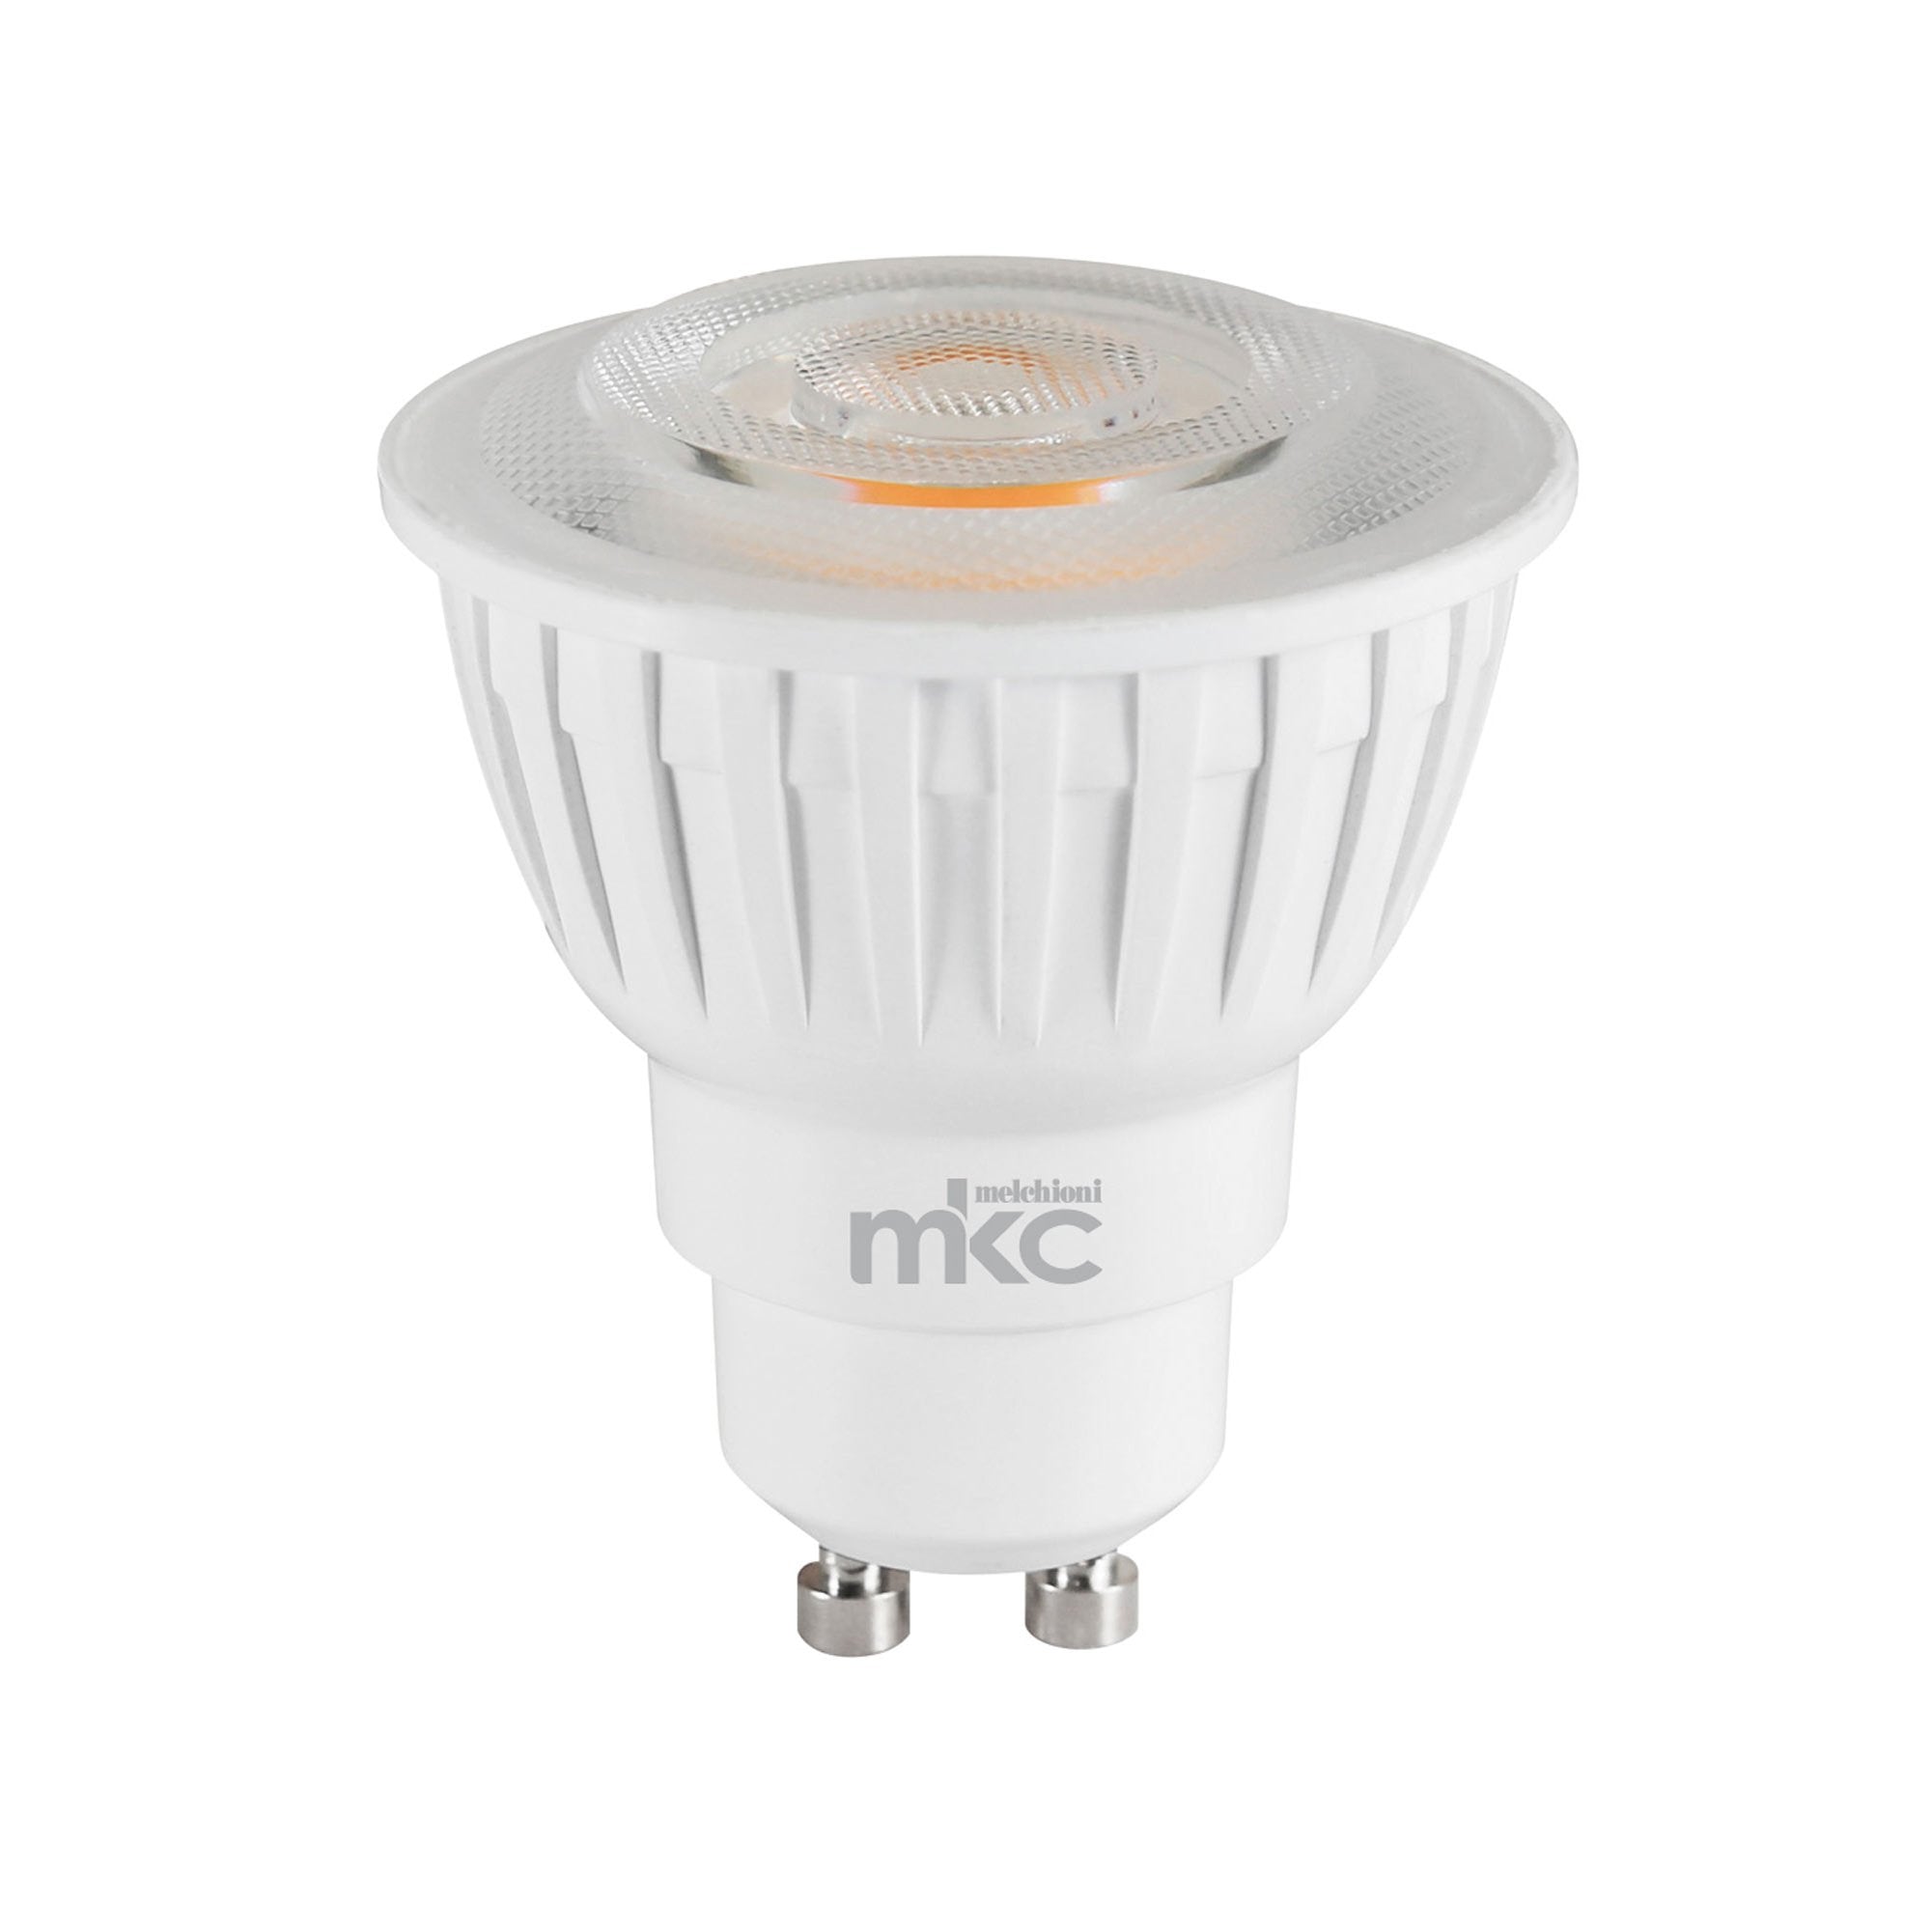 mkc-lampada-led-mr-gu10-7-5w-gu10-6000k-luce-bianca-fredda